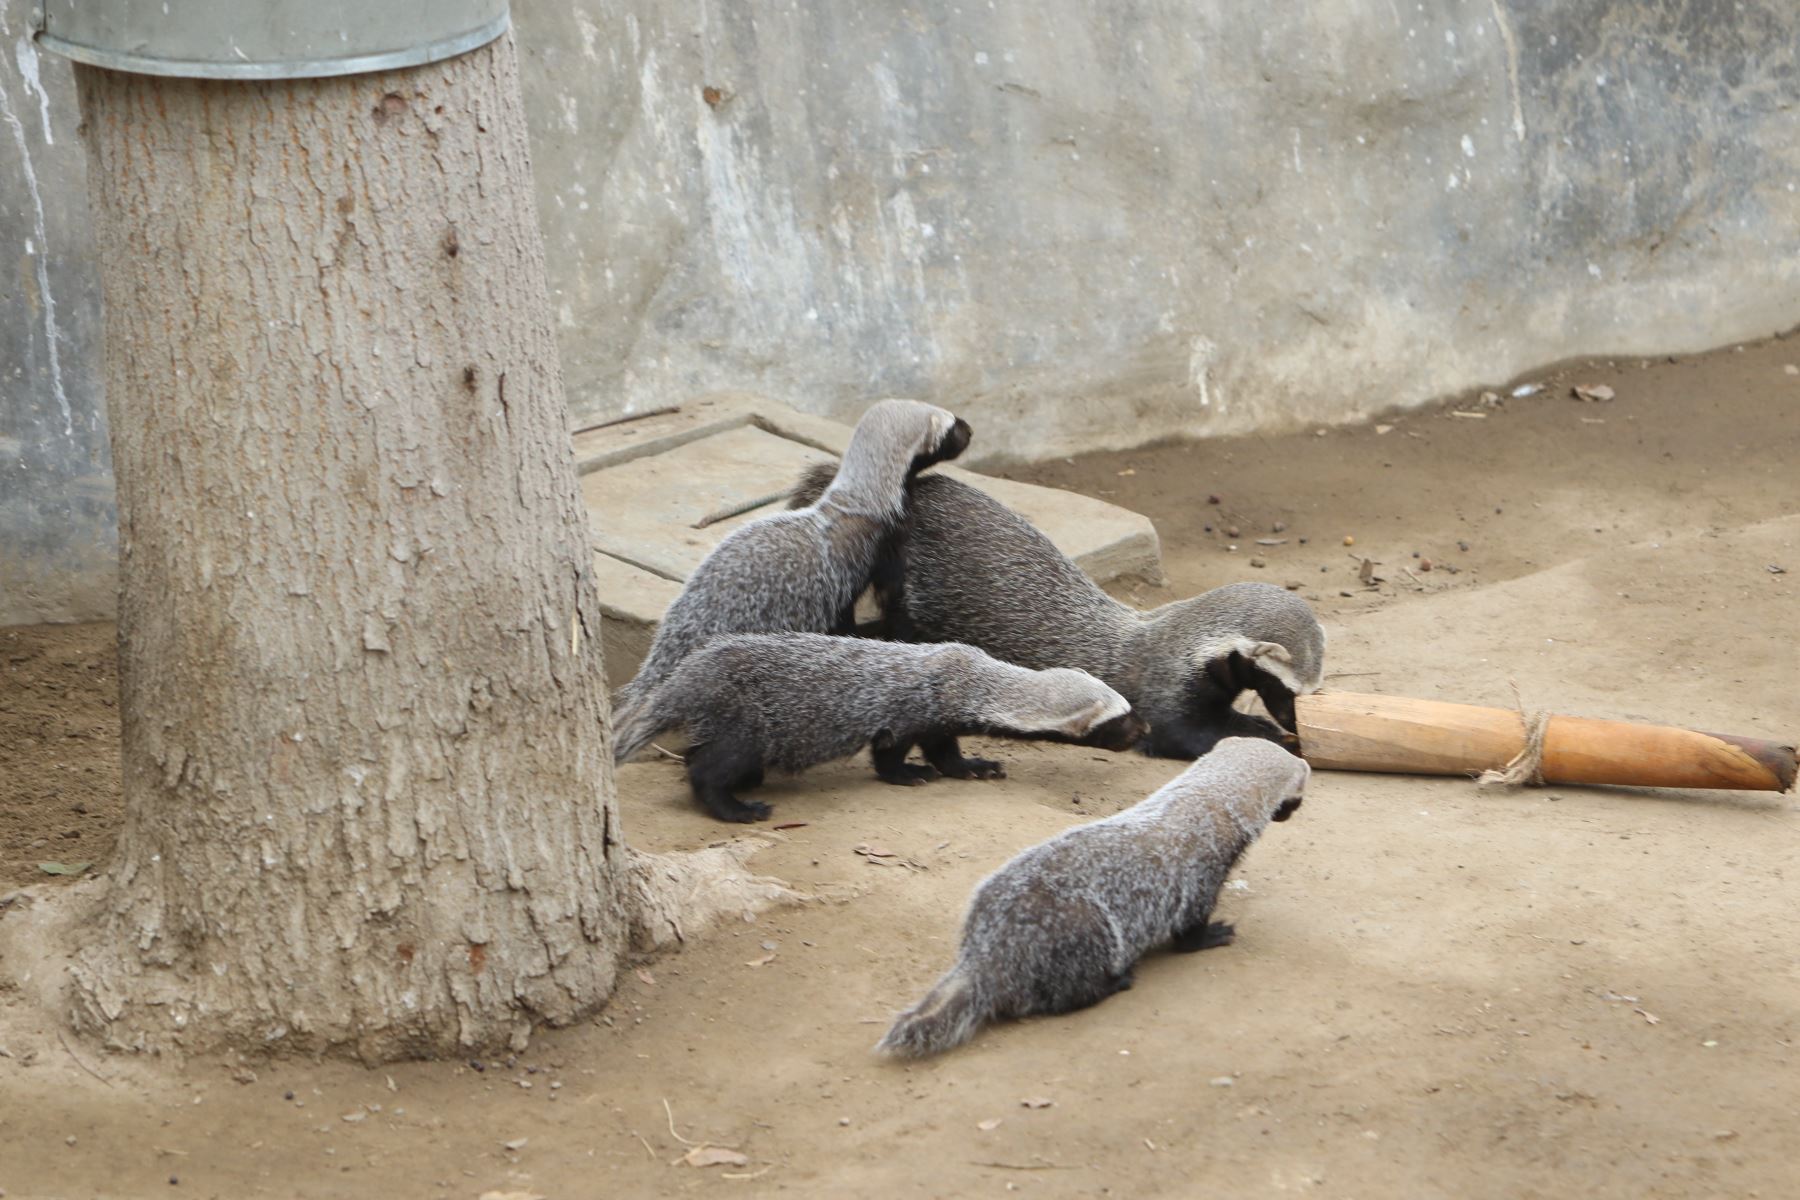 El Parque Zoológico Huachipa presentó a los bebés trillizos de hurón, de un mes de nacidos, que no pueden ser tomados como mascotas, al ser considerada una especie silvestre, pero que viven felices junto a su madre en un espacio especialmente acondicionado para ellos.
Foto: ANDINA/Héctor Vinces